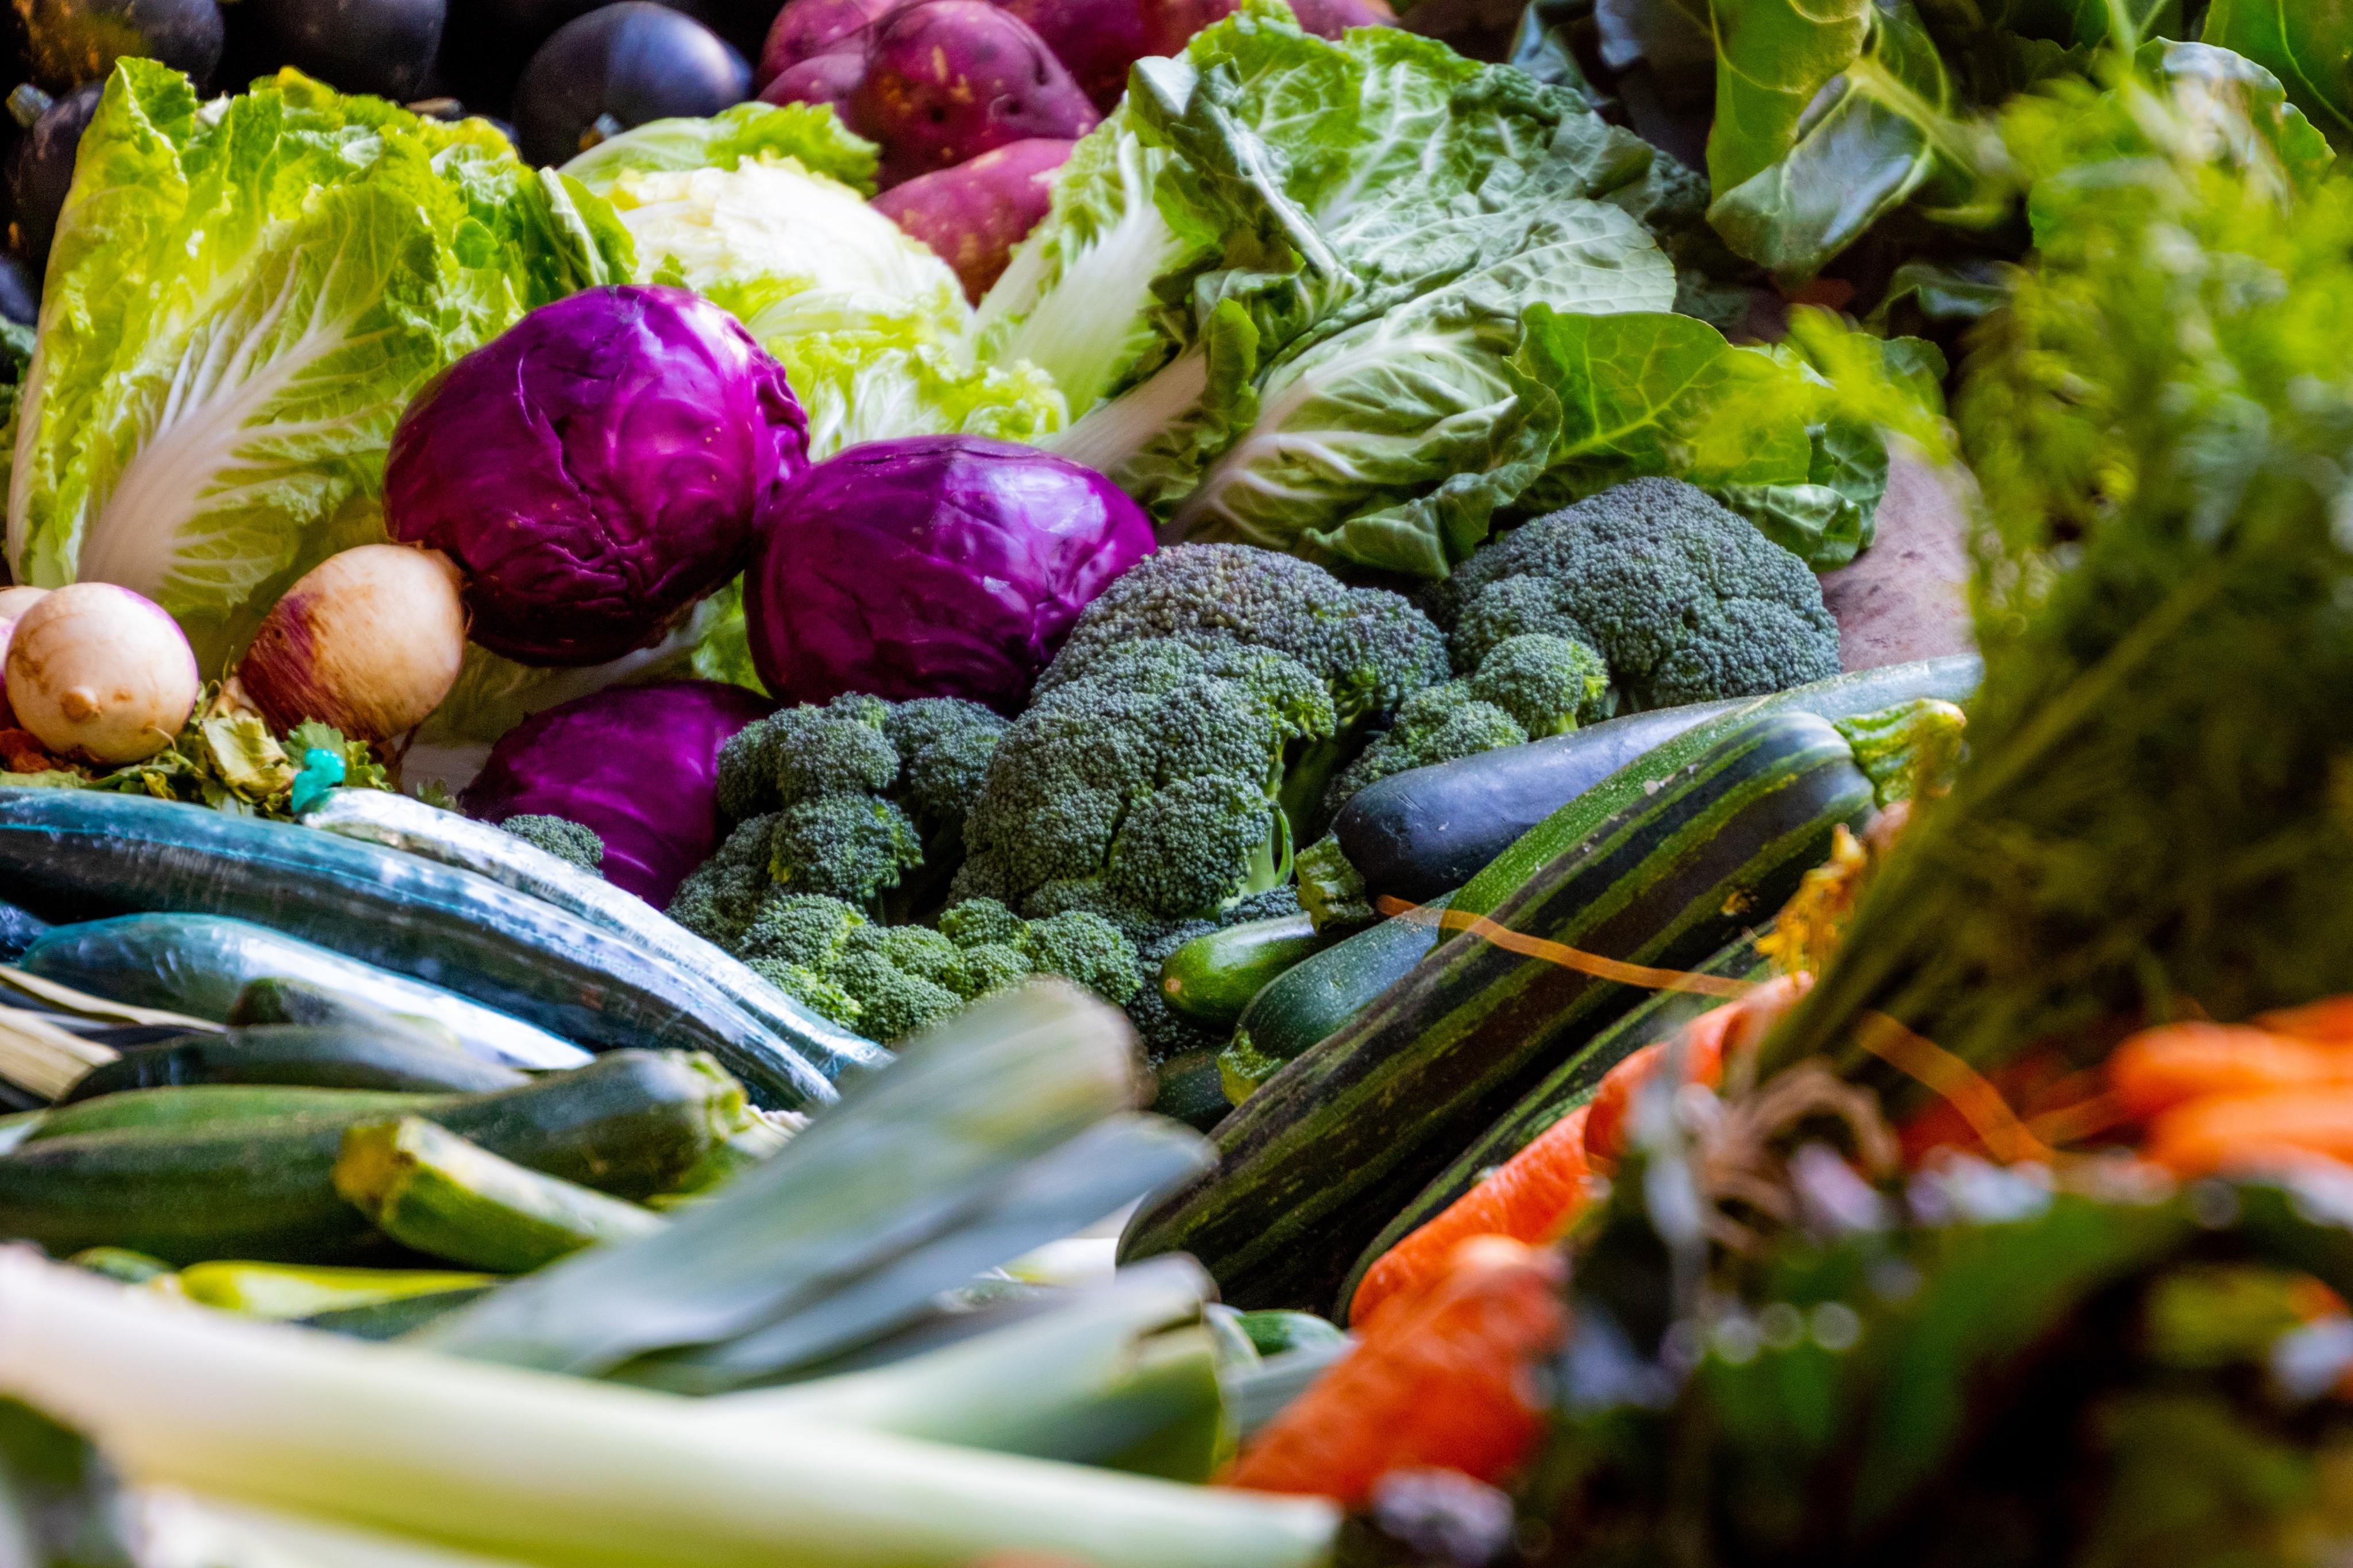 Cómo elegir mejor las verduras cuando vas al mercado - El Diario NY